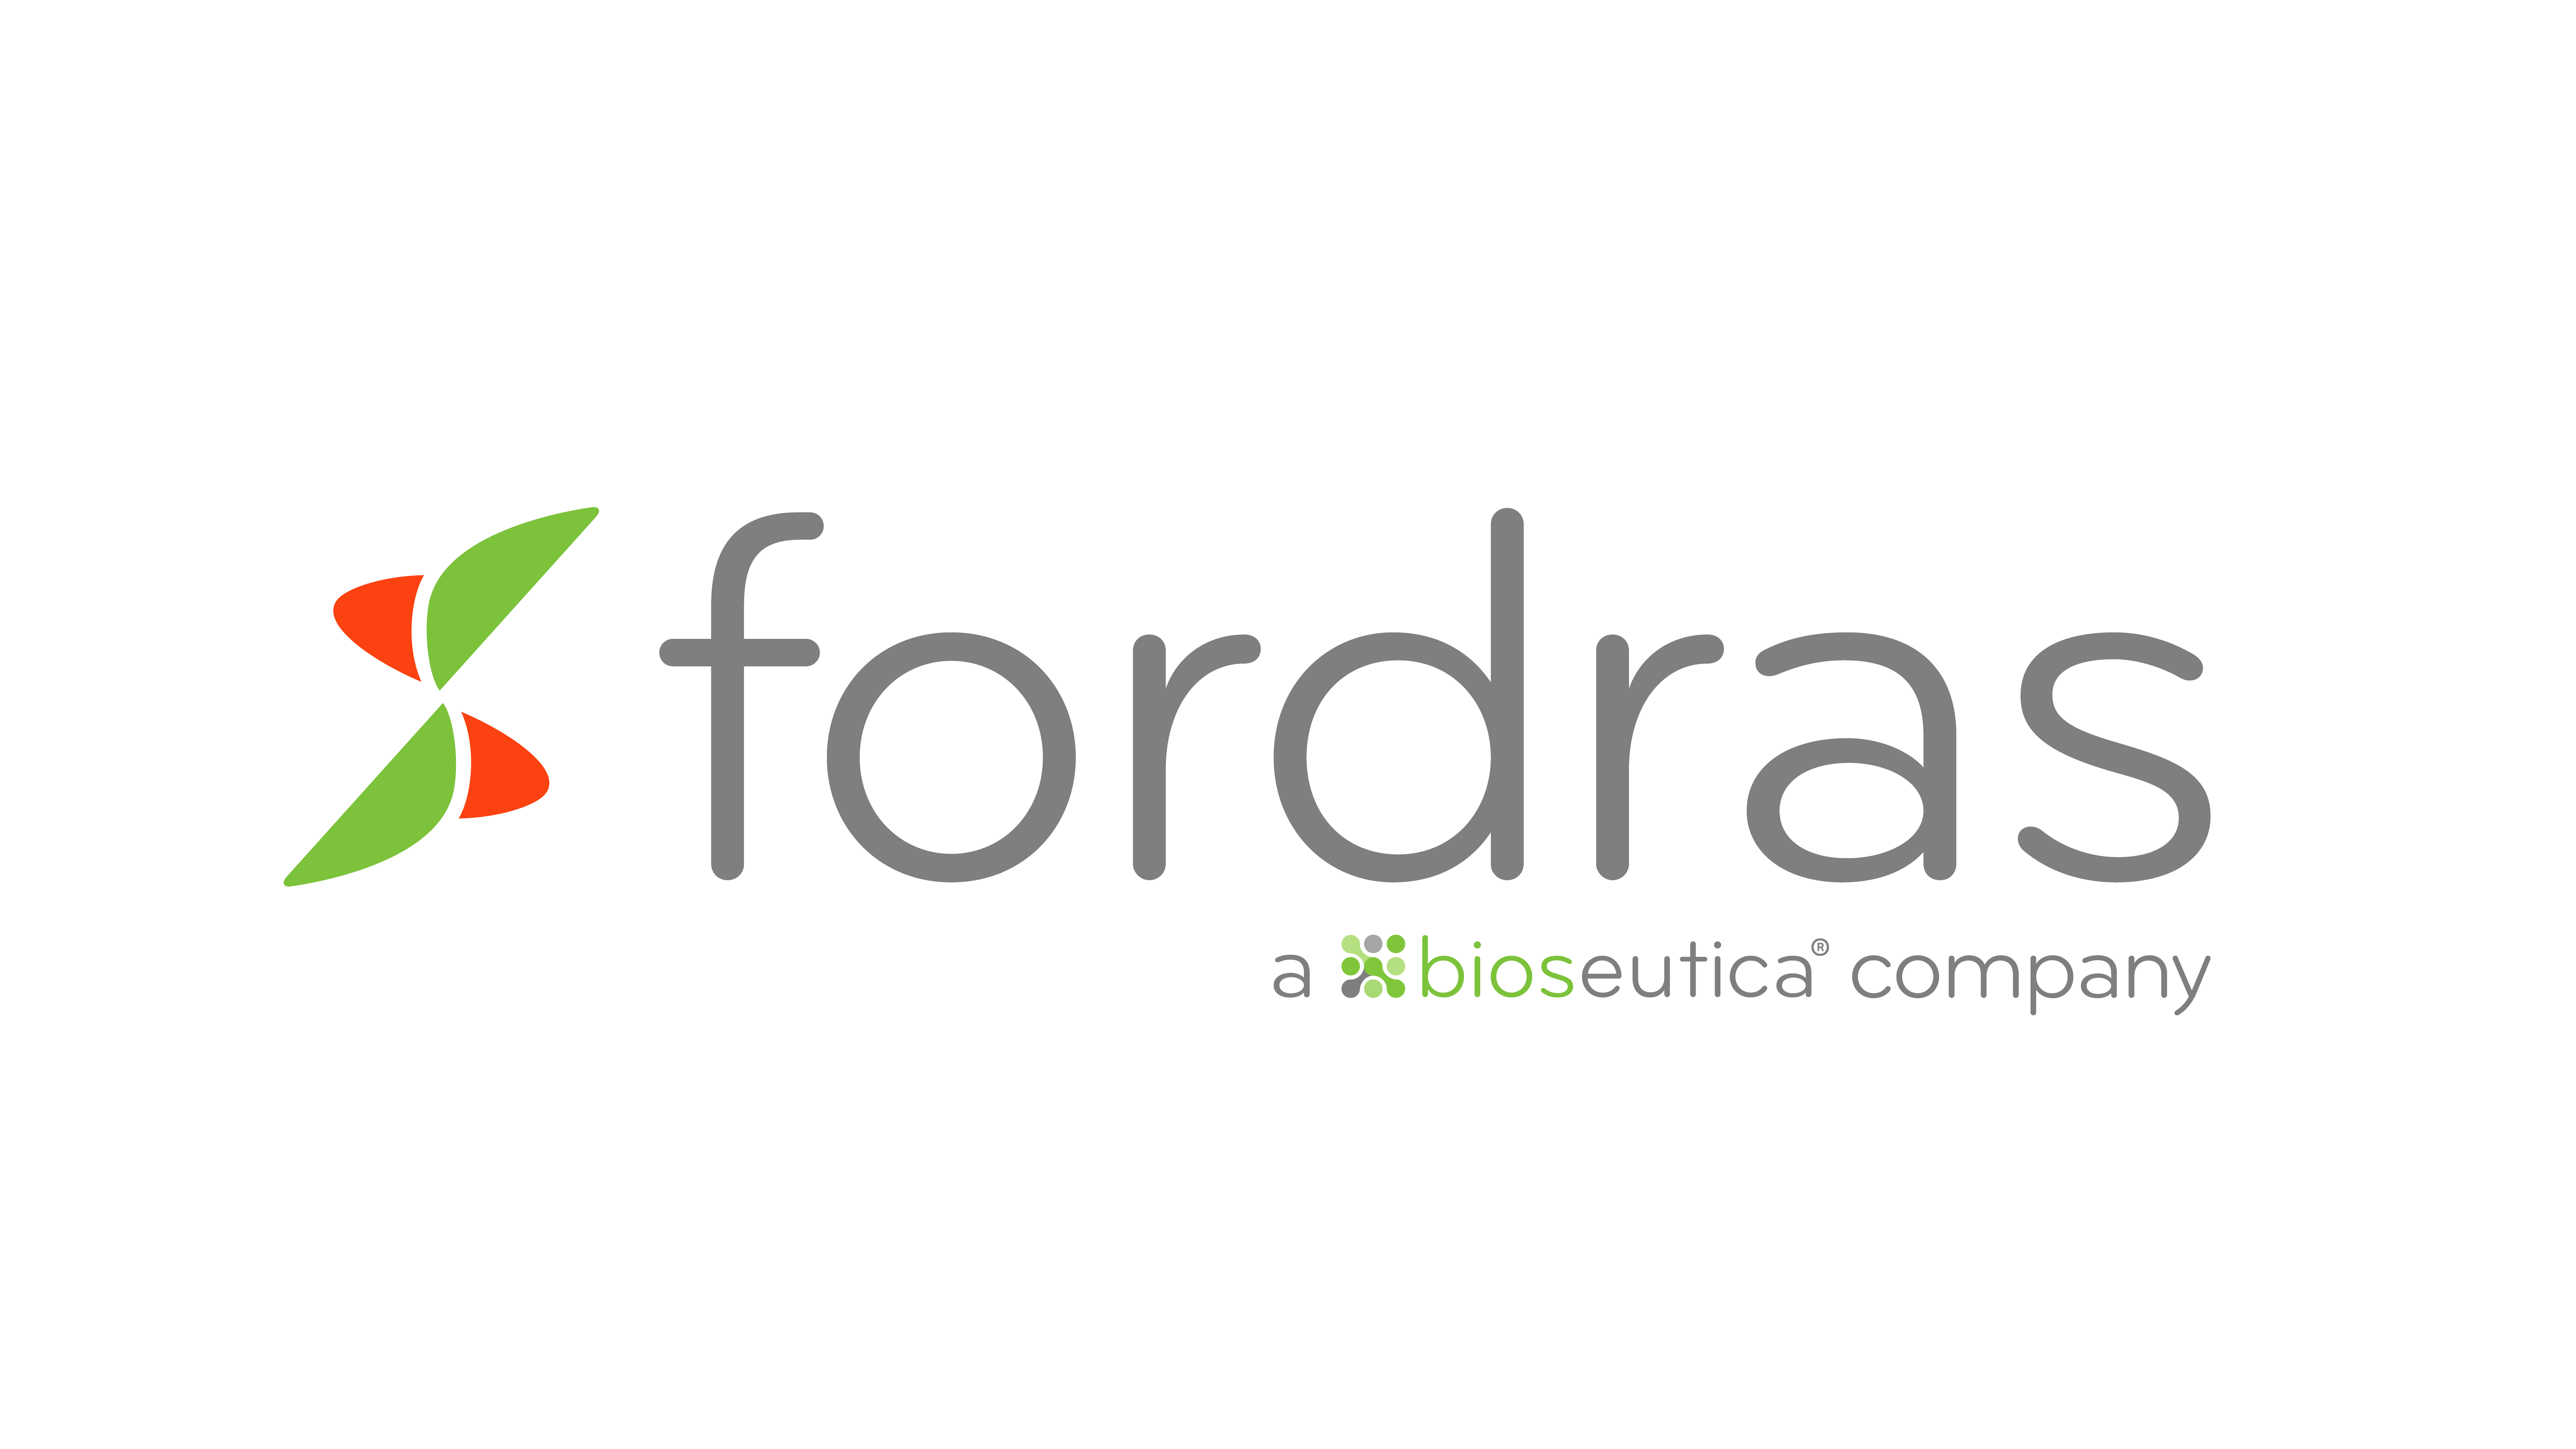 Fordras SA, a Bioseutica Company